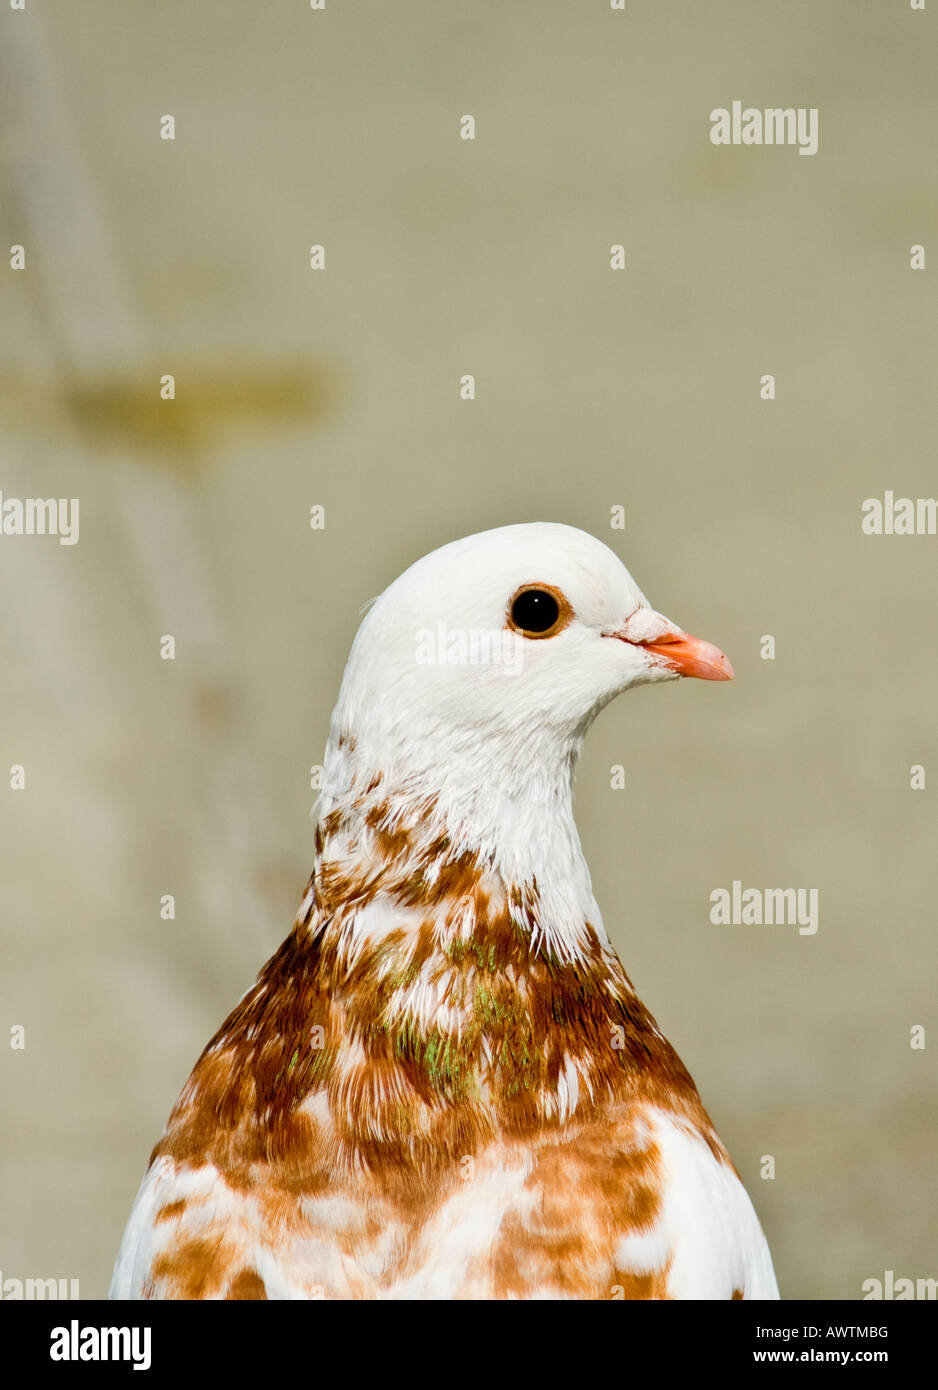 Pigeon portrait Stock Photo